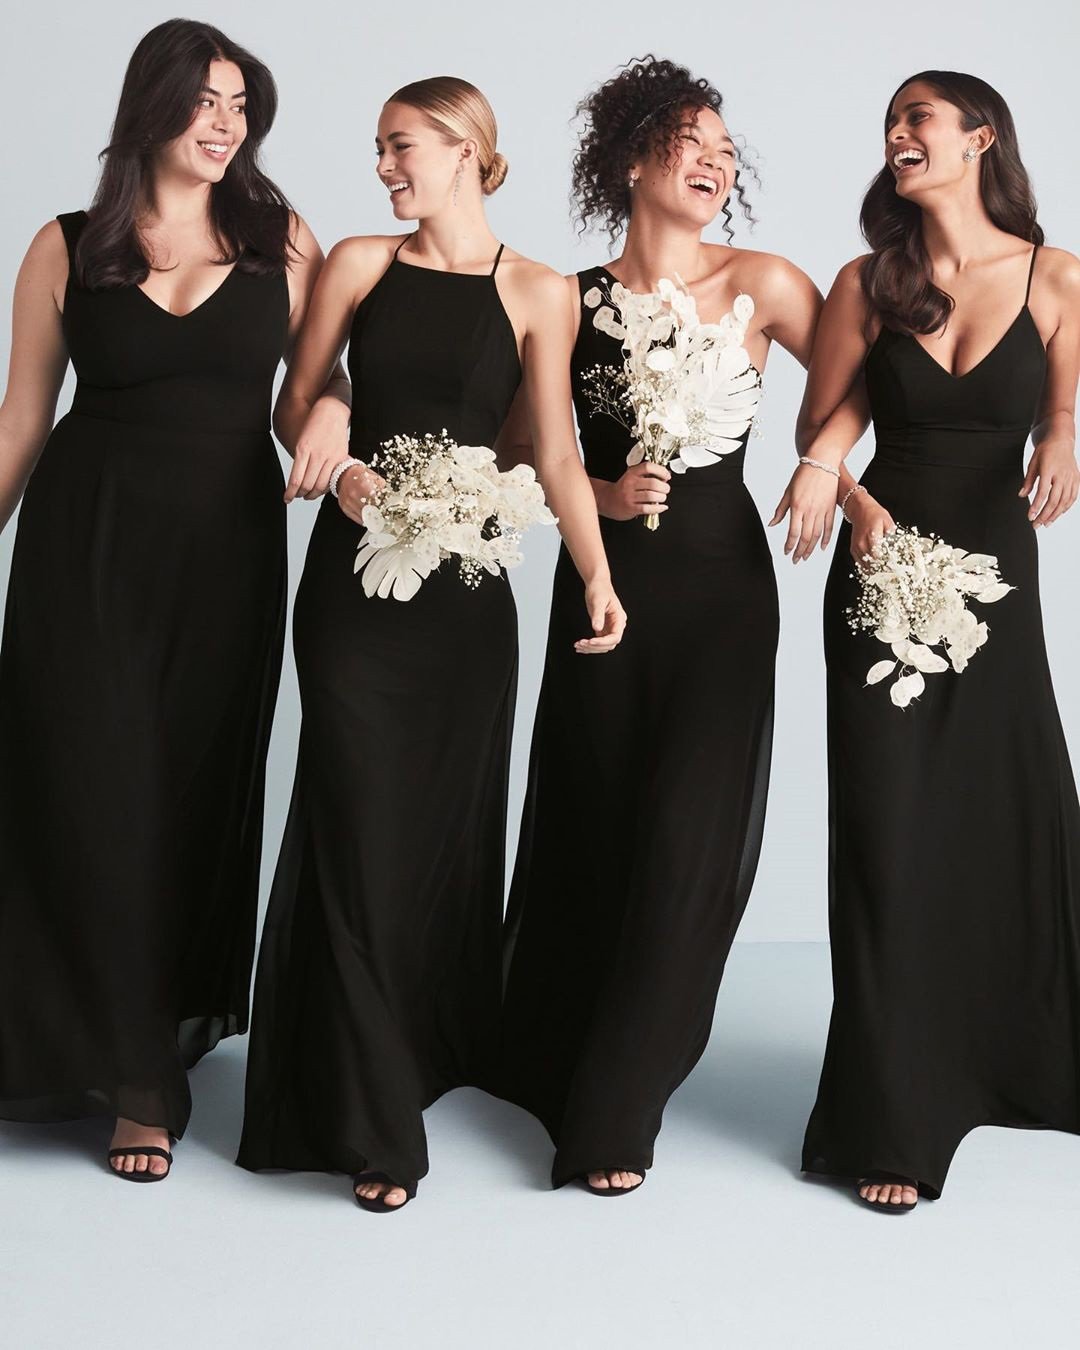 black white wedding colors dress bouquet attire